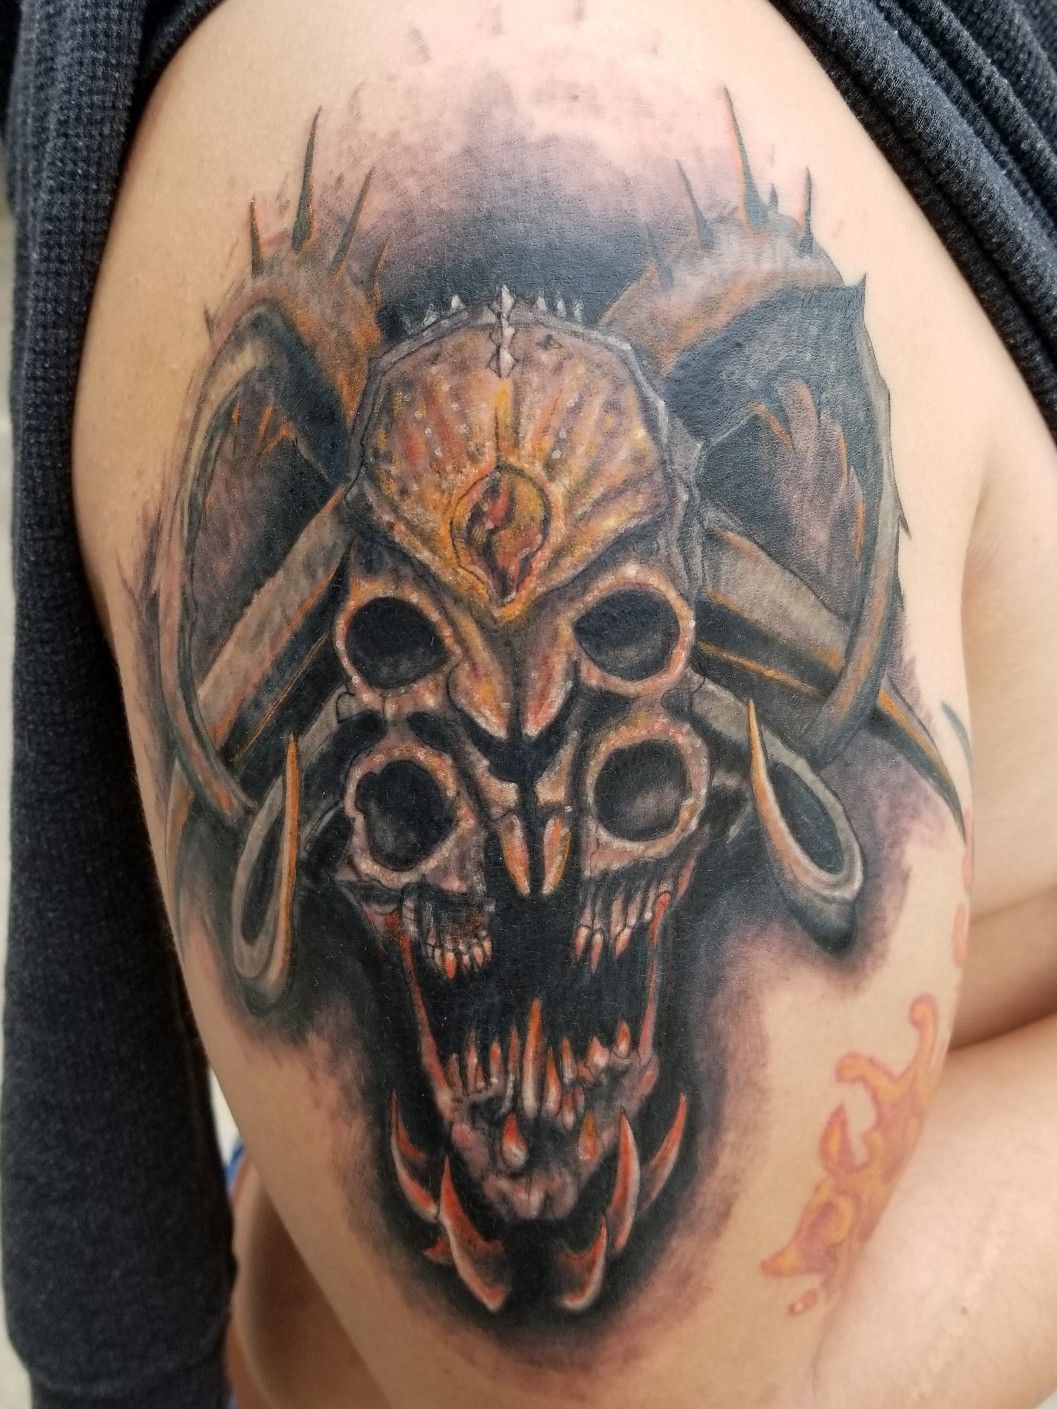 Skull wallpaper tattoo  Tattoo contest  99designs